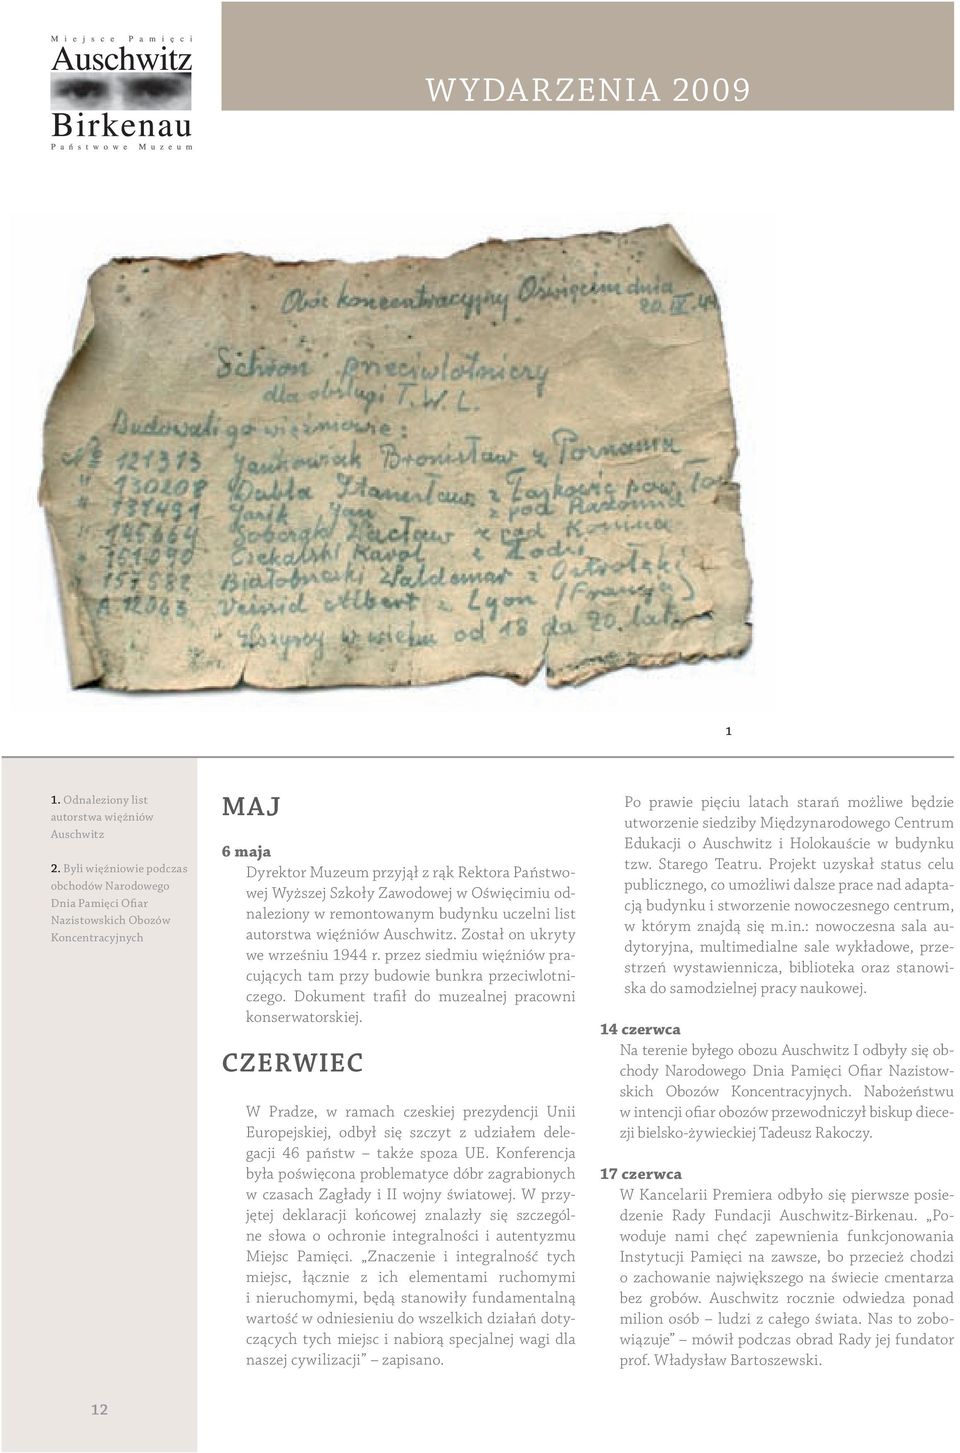 odnaleziony w remontowanym budynku uczelni list autorstwa więźniów Auschwitz. Został on ukryty we wrześniu 1944 r. przez siedmiu więźniów pracujących tam przy budowie bunkra przeciwlotniczego.